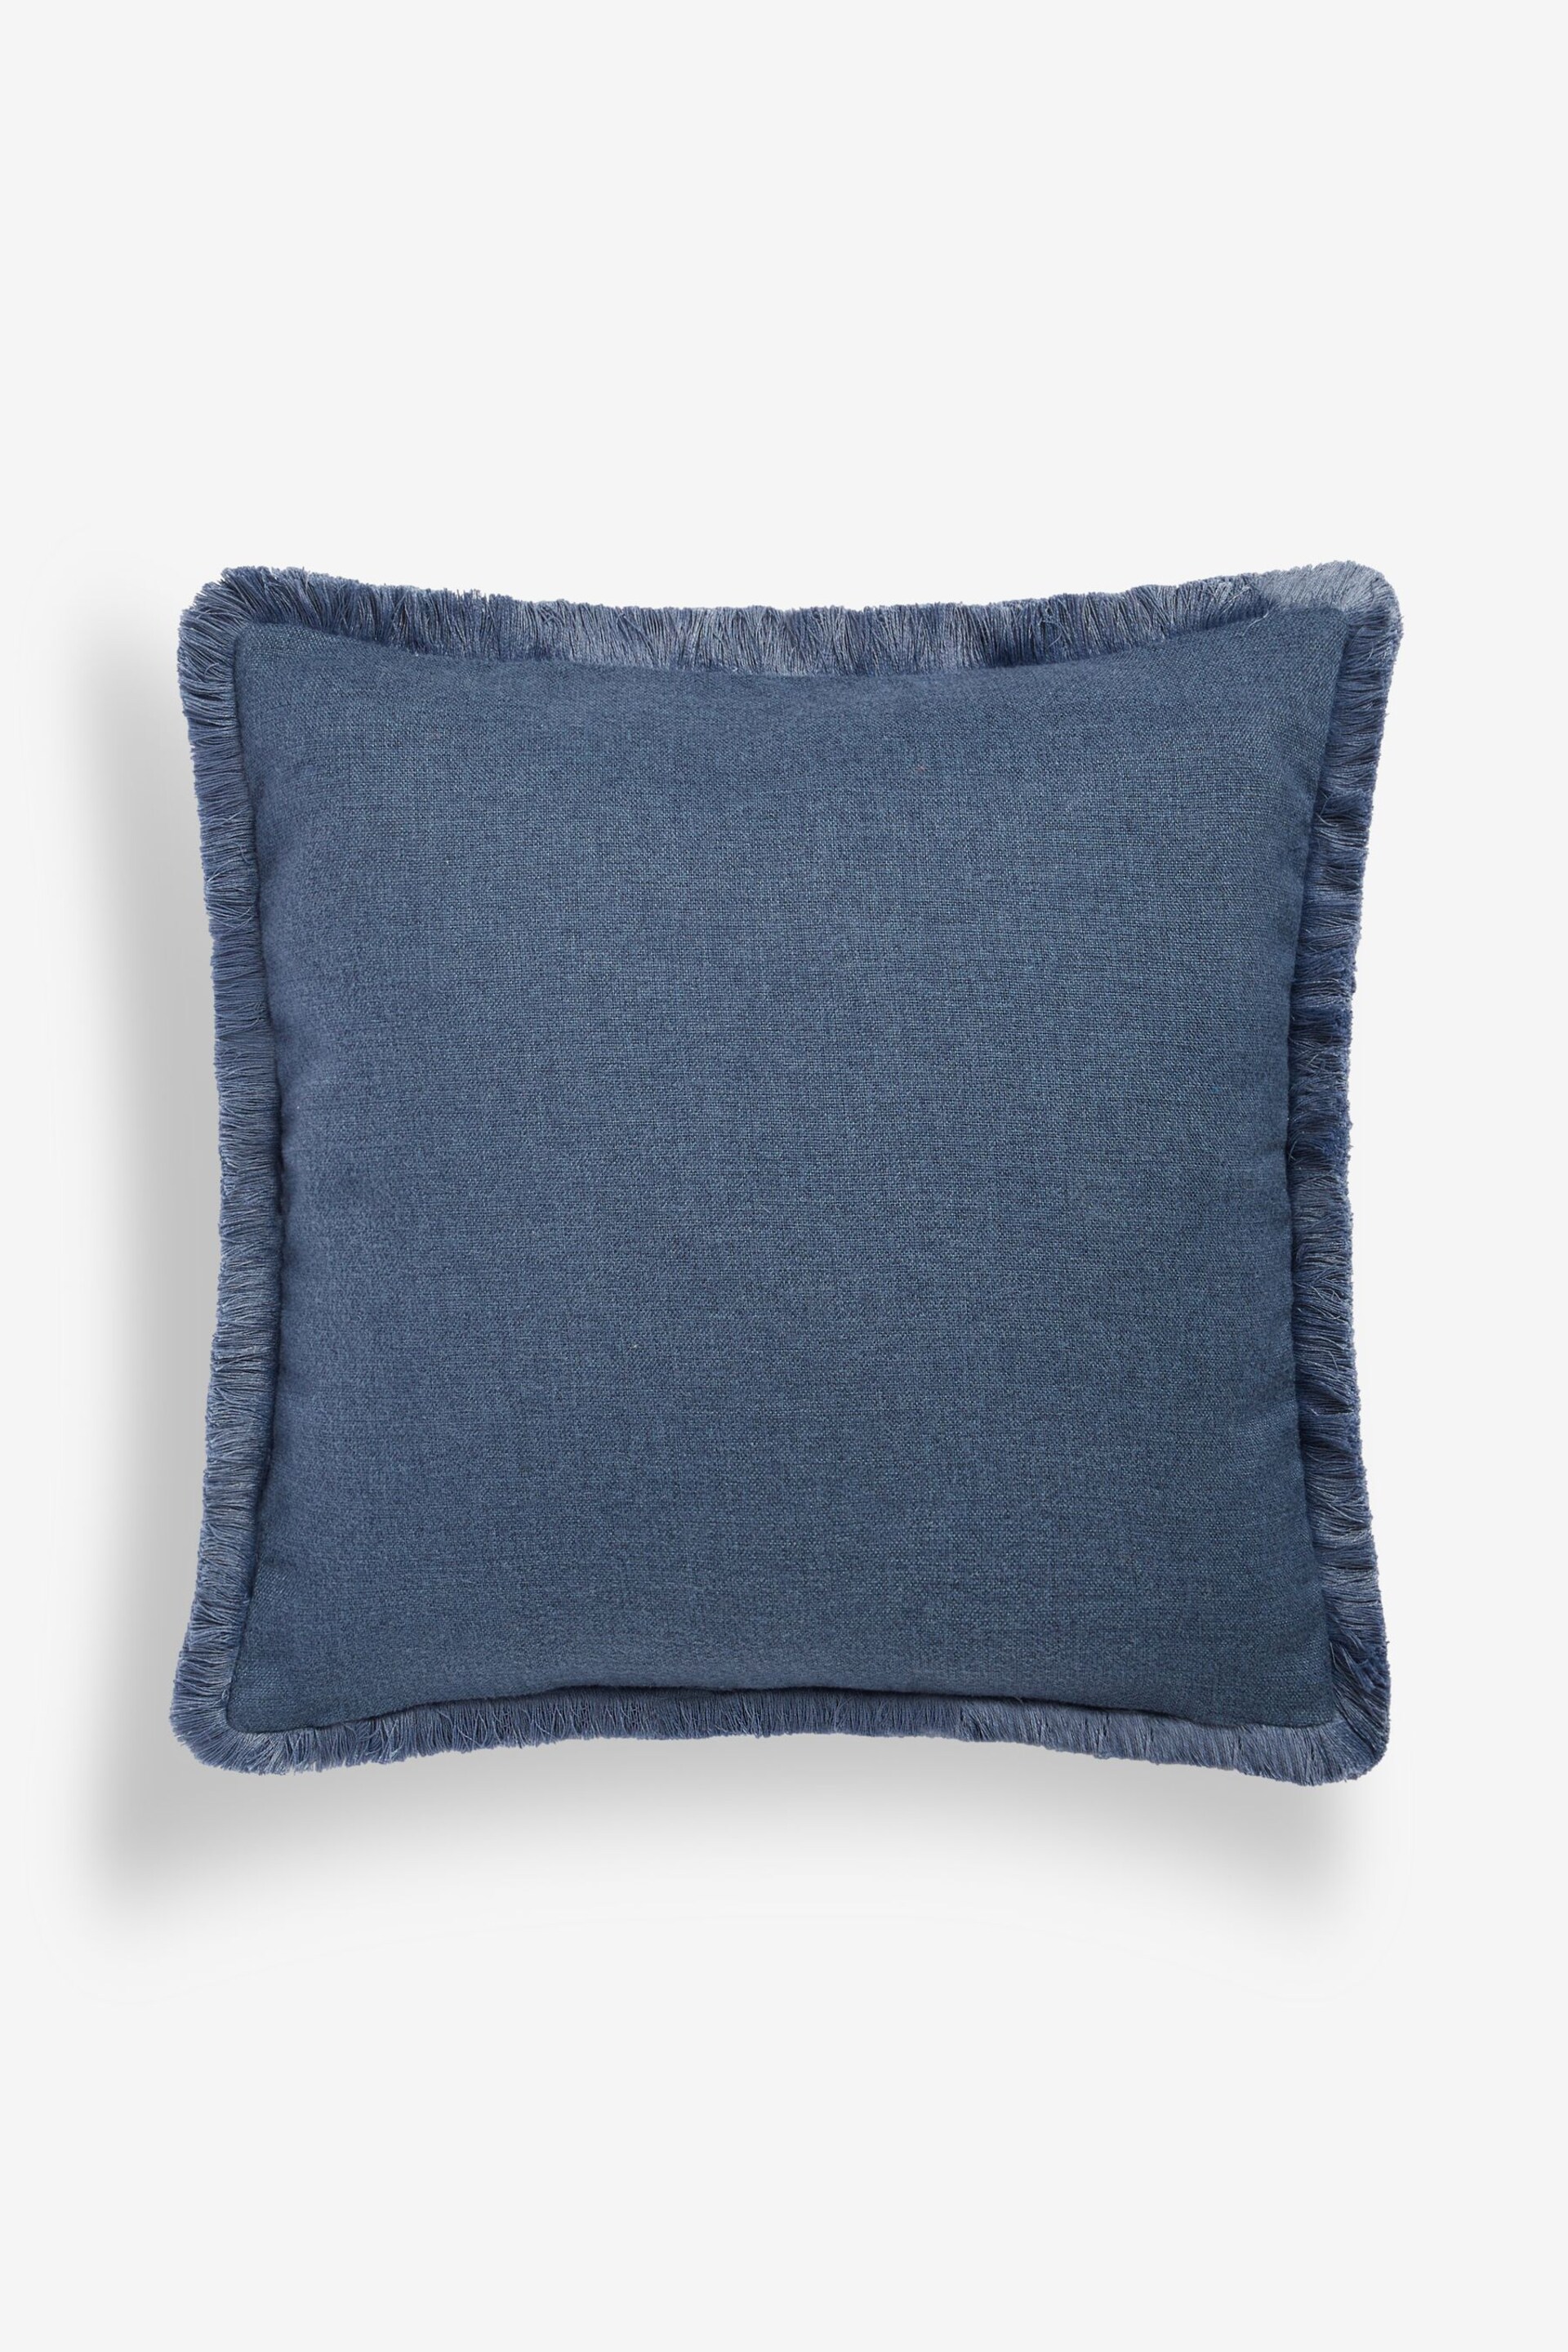 Blue 50 x 50cm Dalby Fringe Trim Cushion - Image 3 of 4